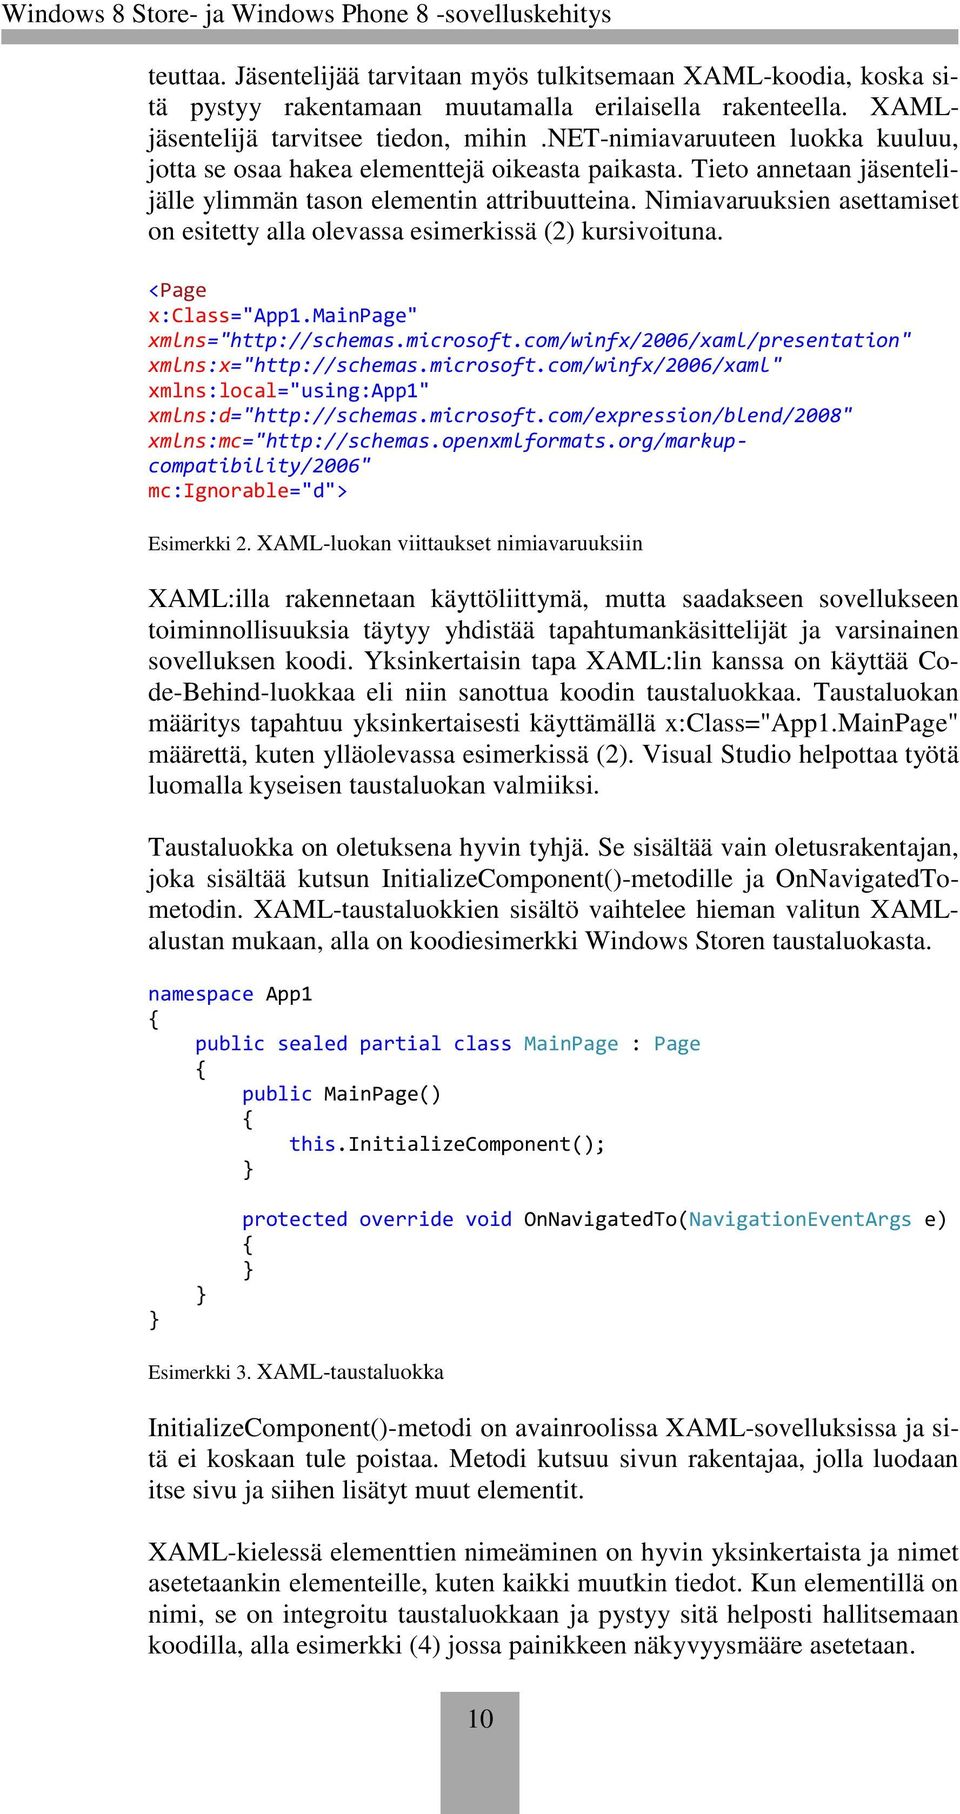 Nimiavaruuksien asettamiset on esitetty alla olevassa esimerkissä (2) kursivoituna. <Page x:class="app1.mainpage" xmlns="http://schemas.microsoft.